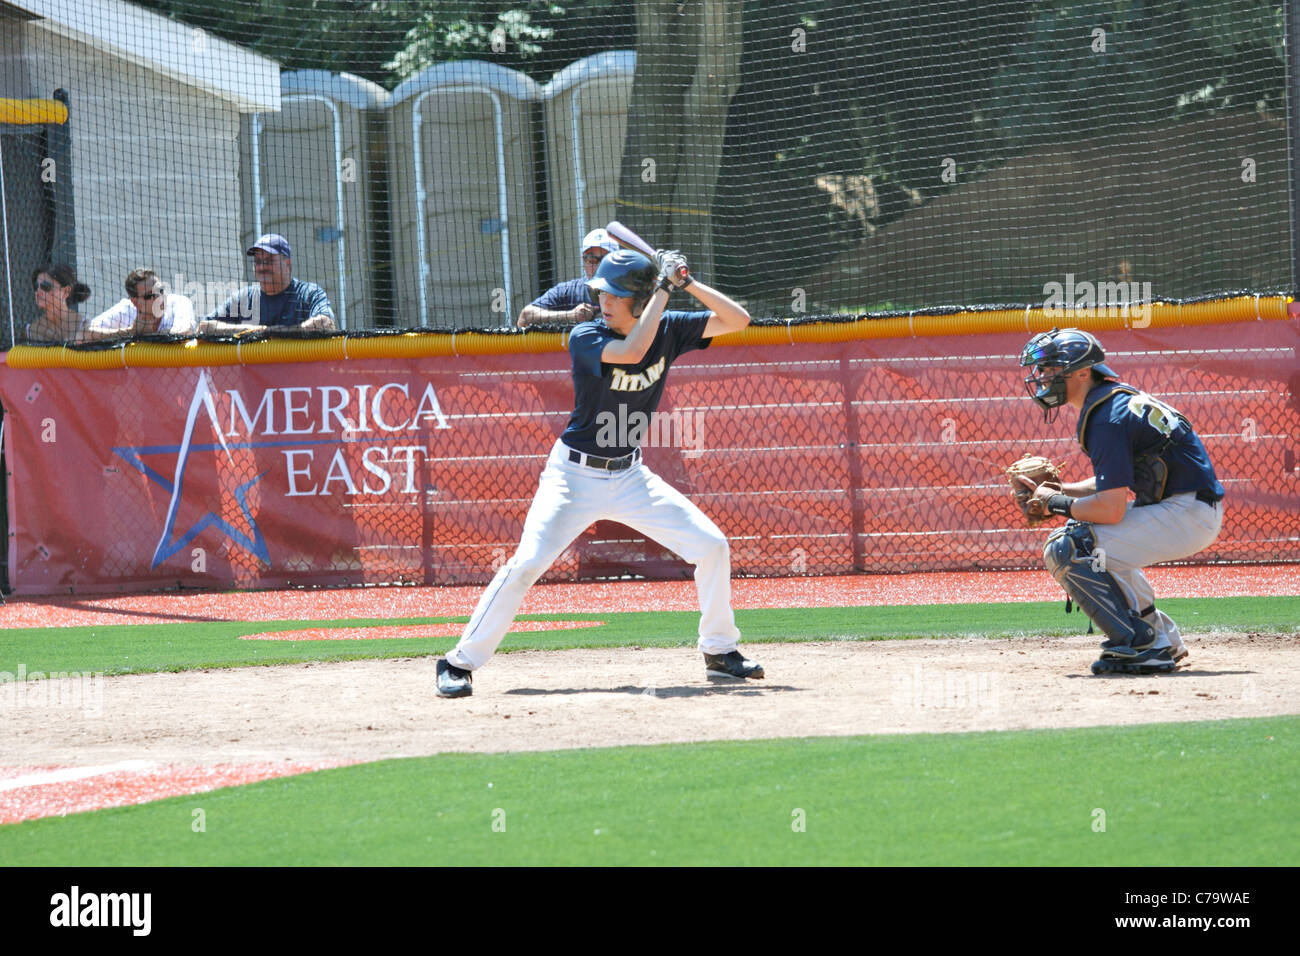 Batter at baseball stadium Stony Brook University Long Island NY Stock Photo